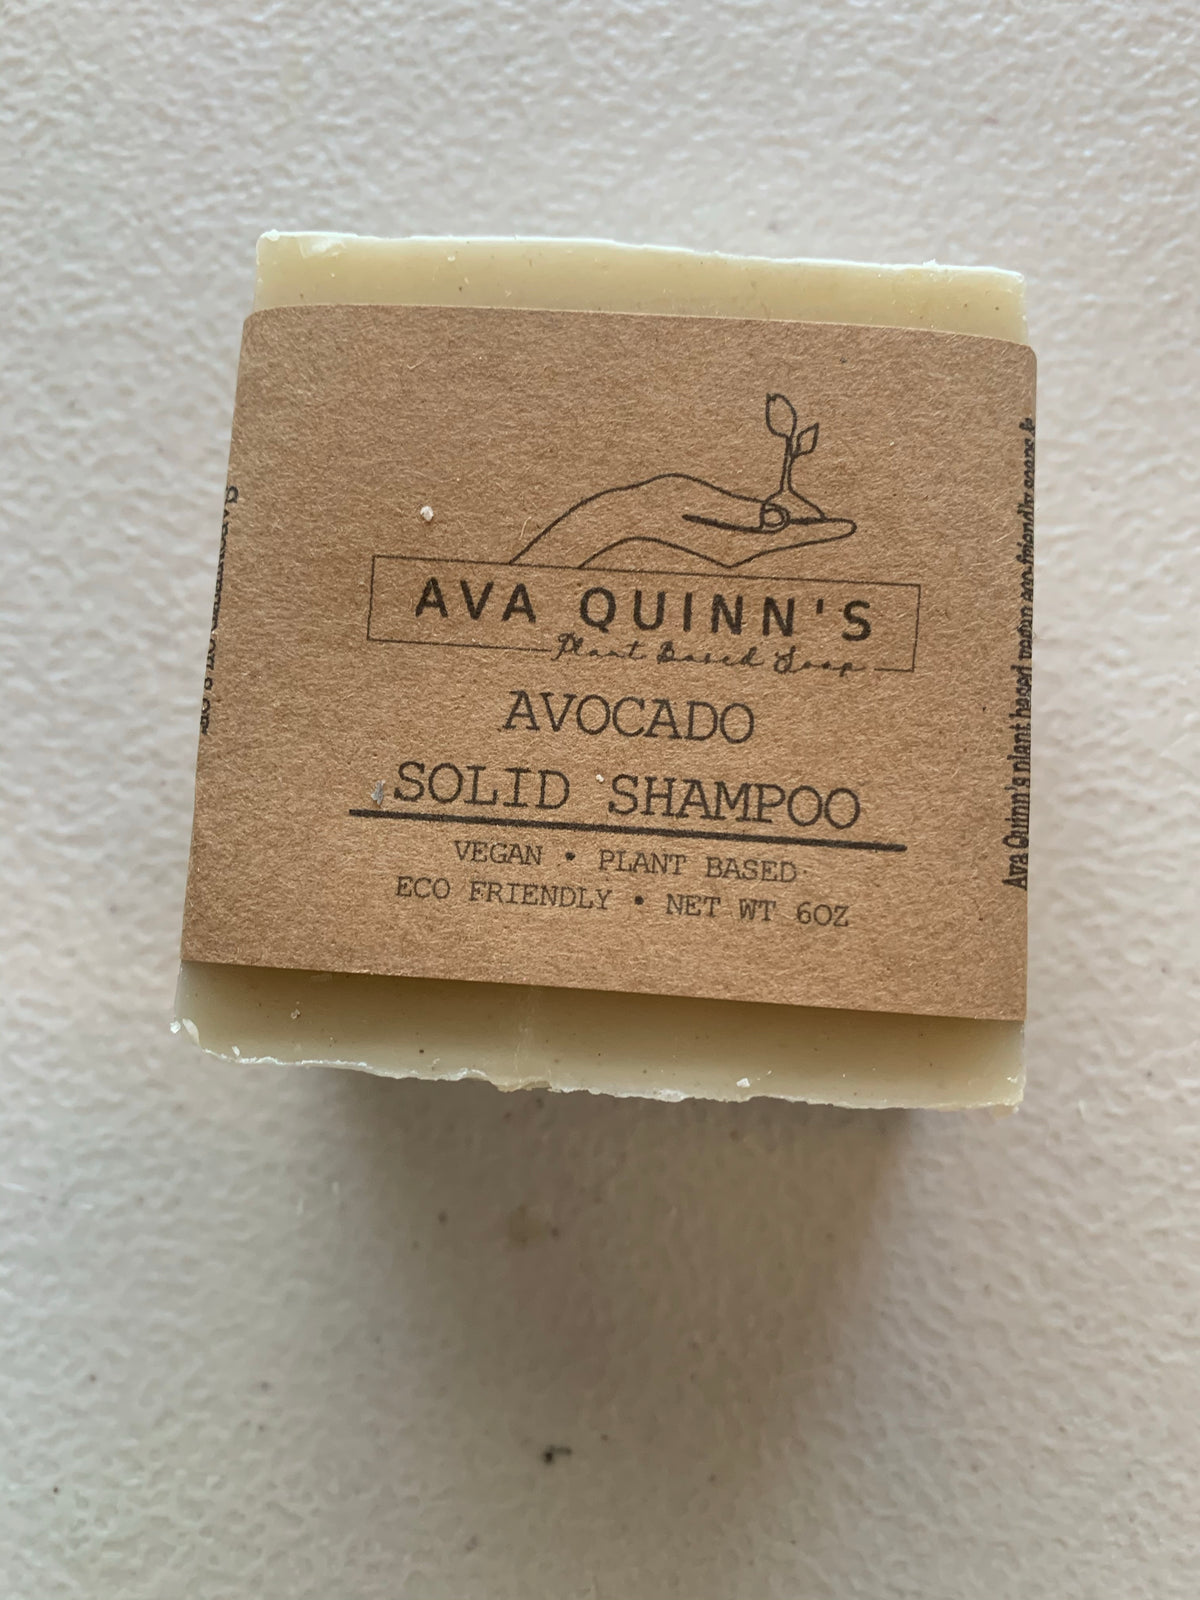 Avocado shampoo wholesale from Ava Quinn's